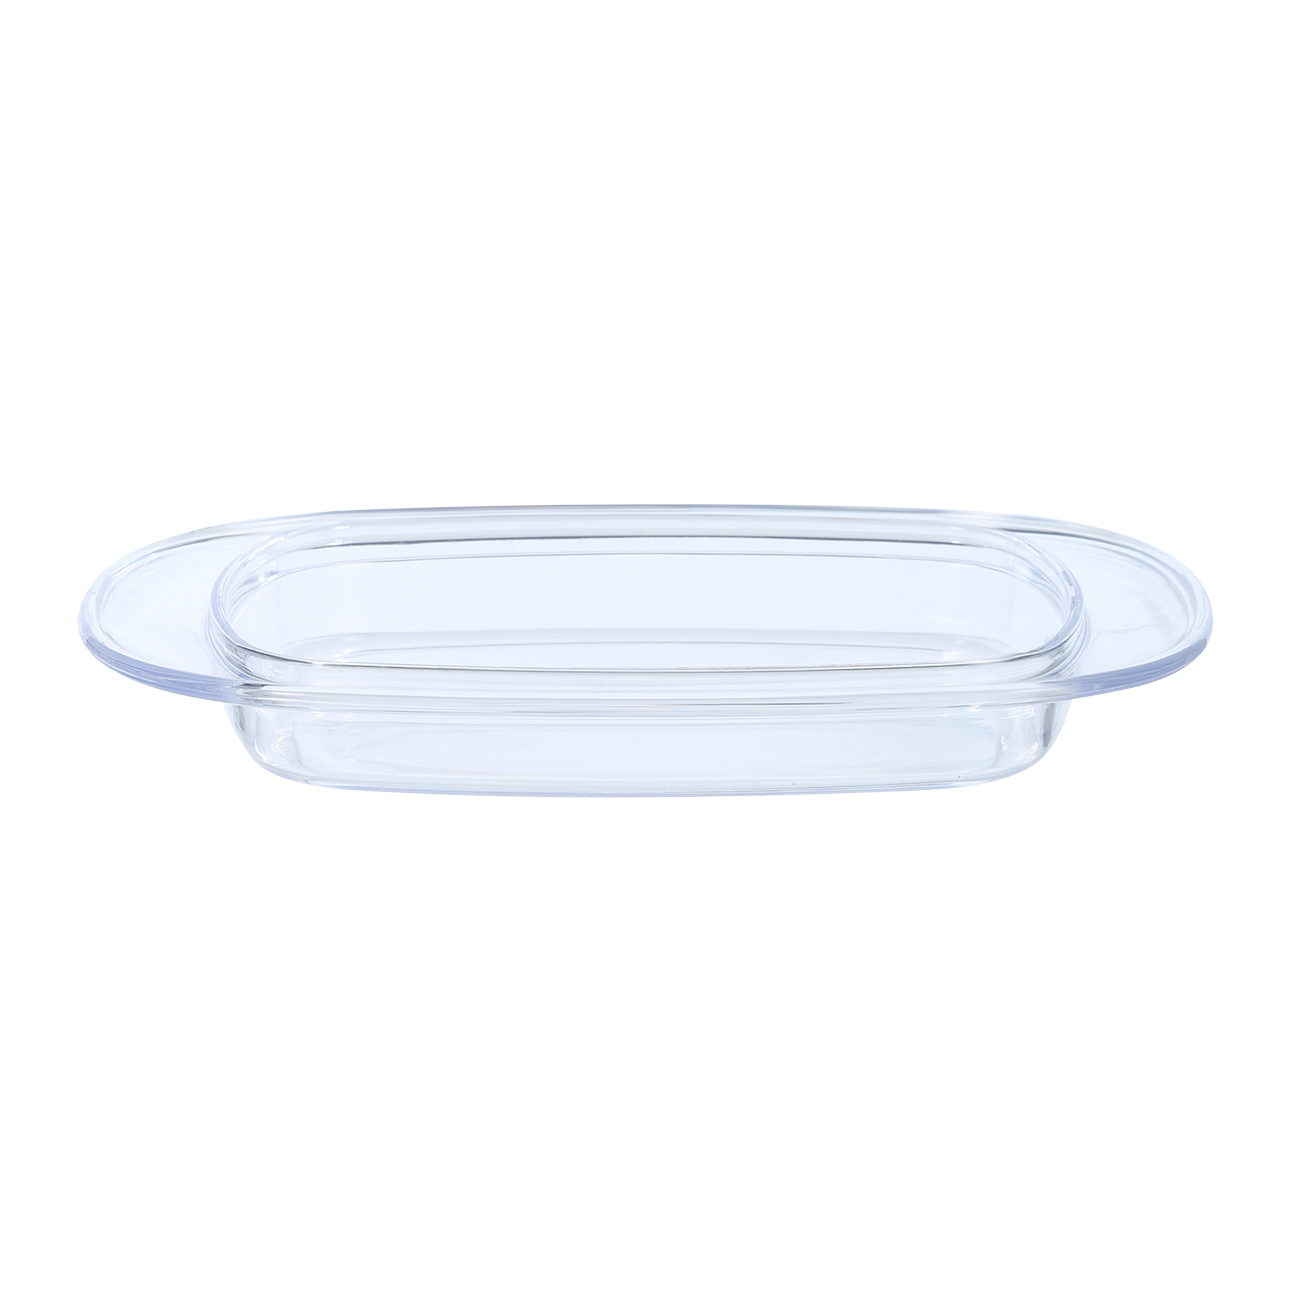 Butter dish, 18 cm, plastic, rectangular, Beige, Soft Kitchen изображение № 2